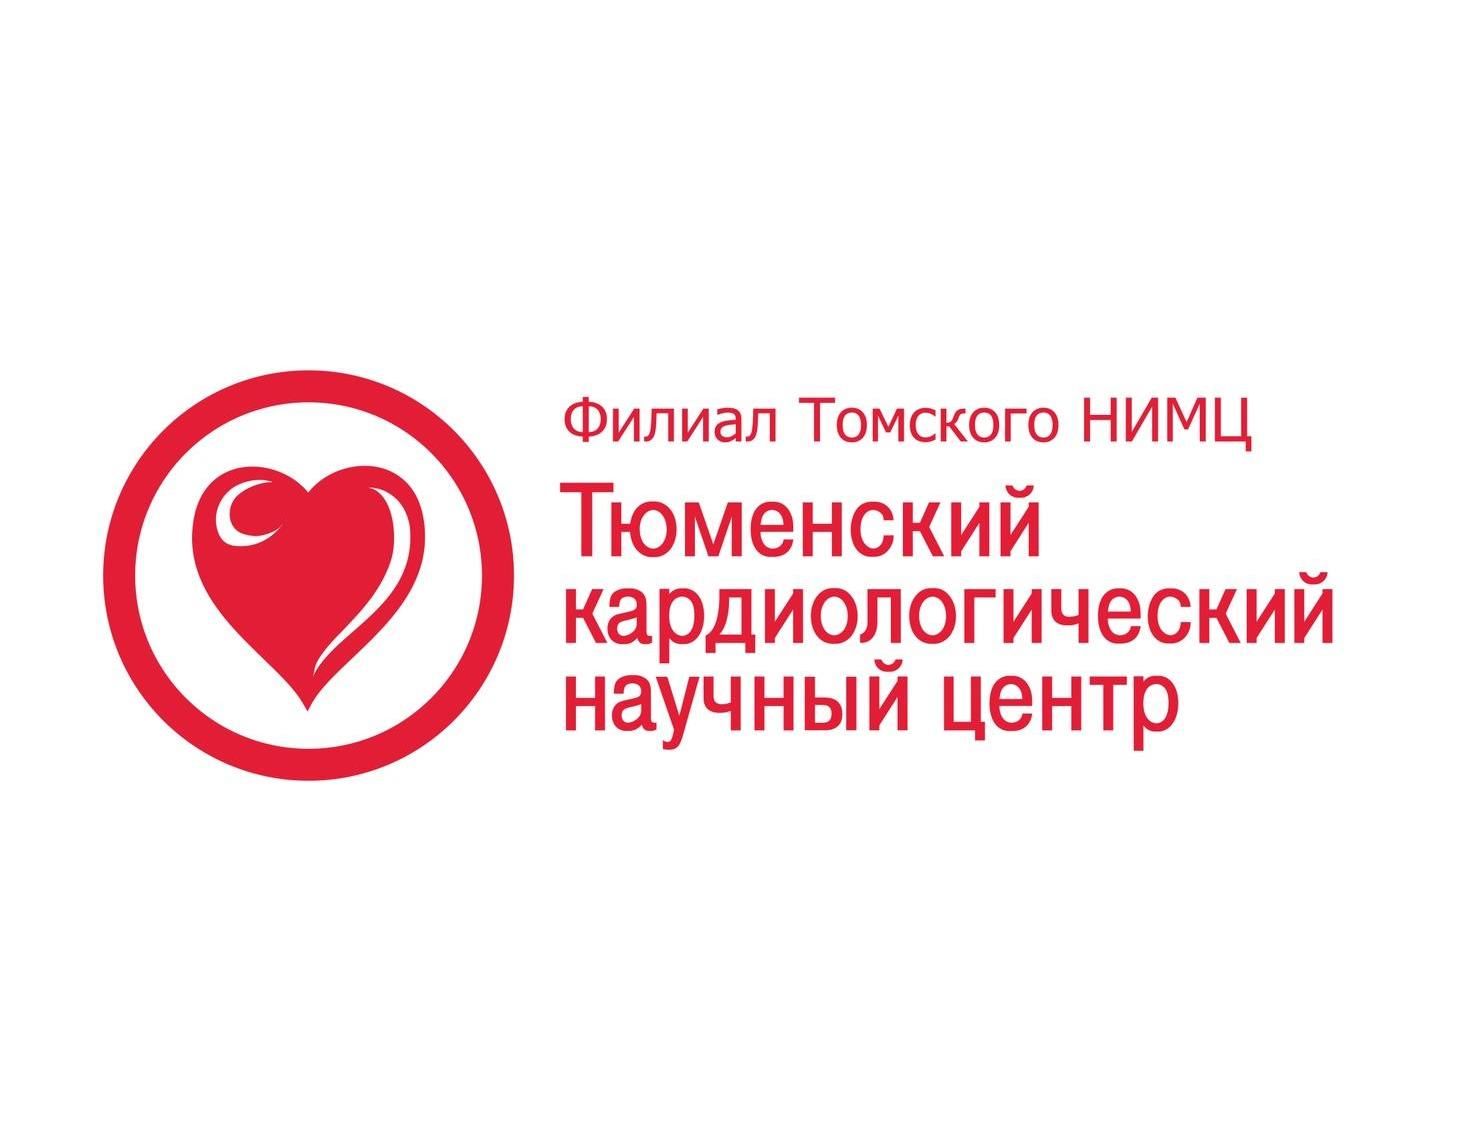 18 ежегодный научный симпозиум по транскатетерному лечению сердечно-сосудистых заболеваний - TCT-2006